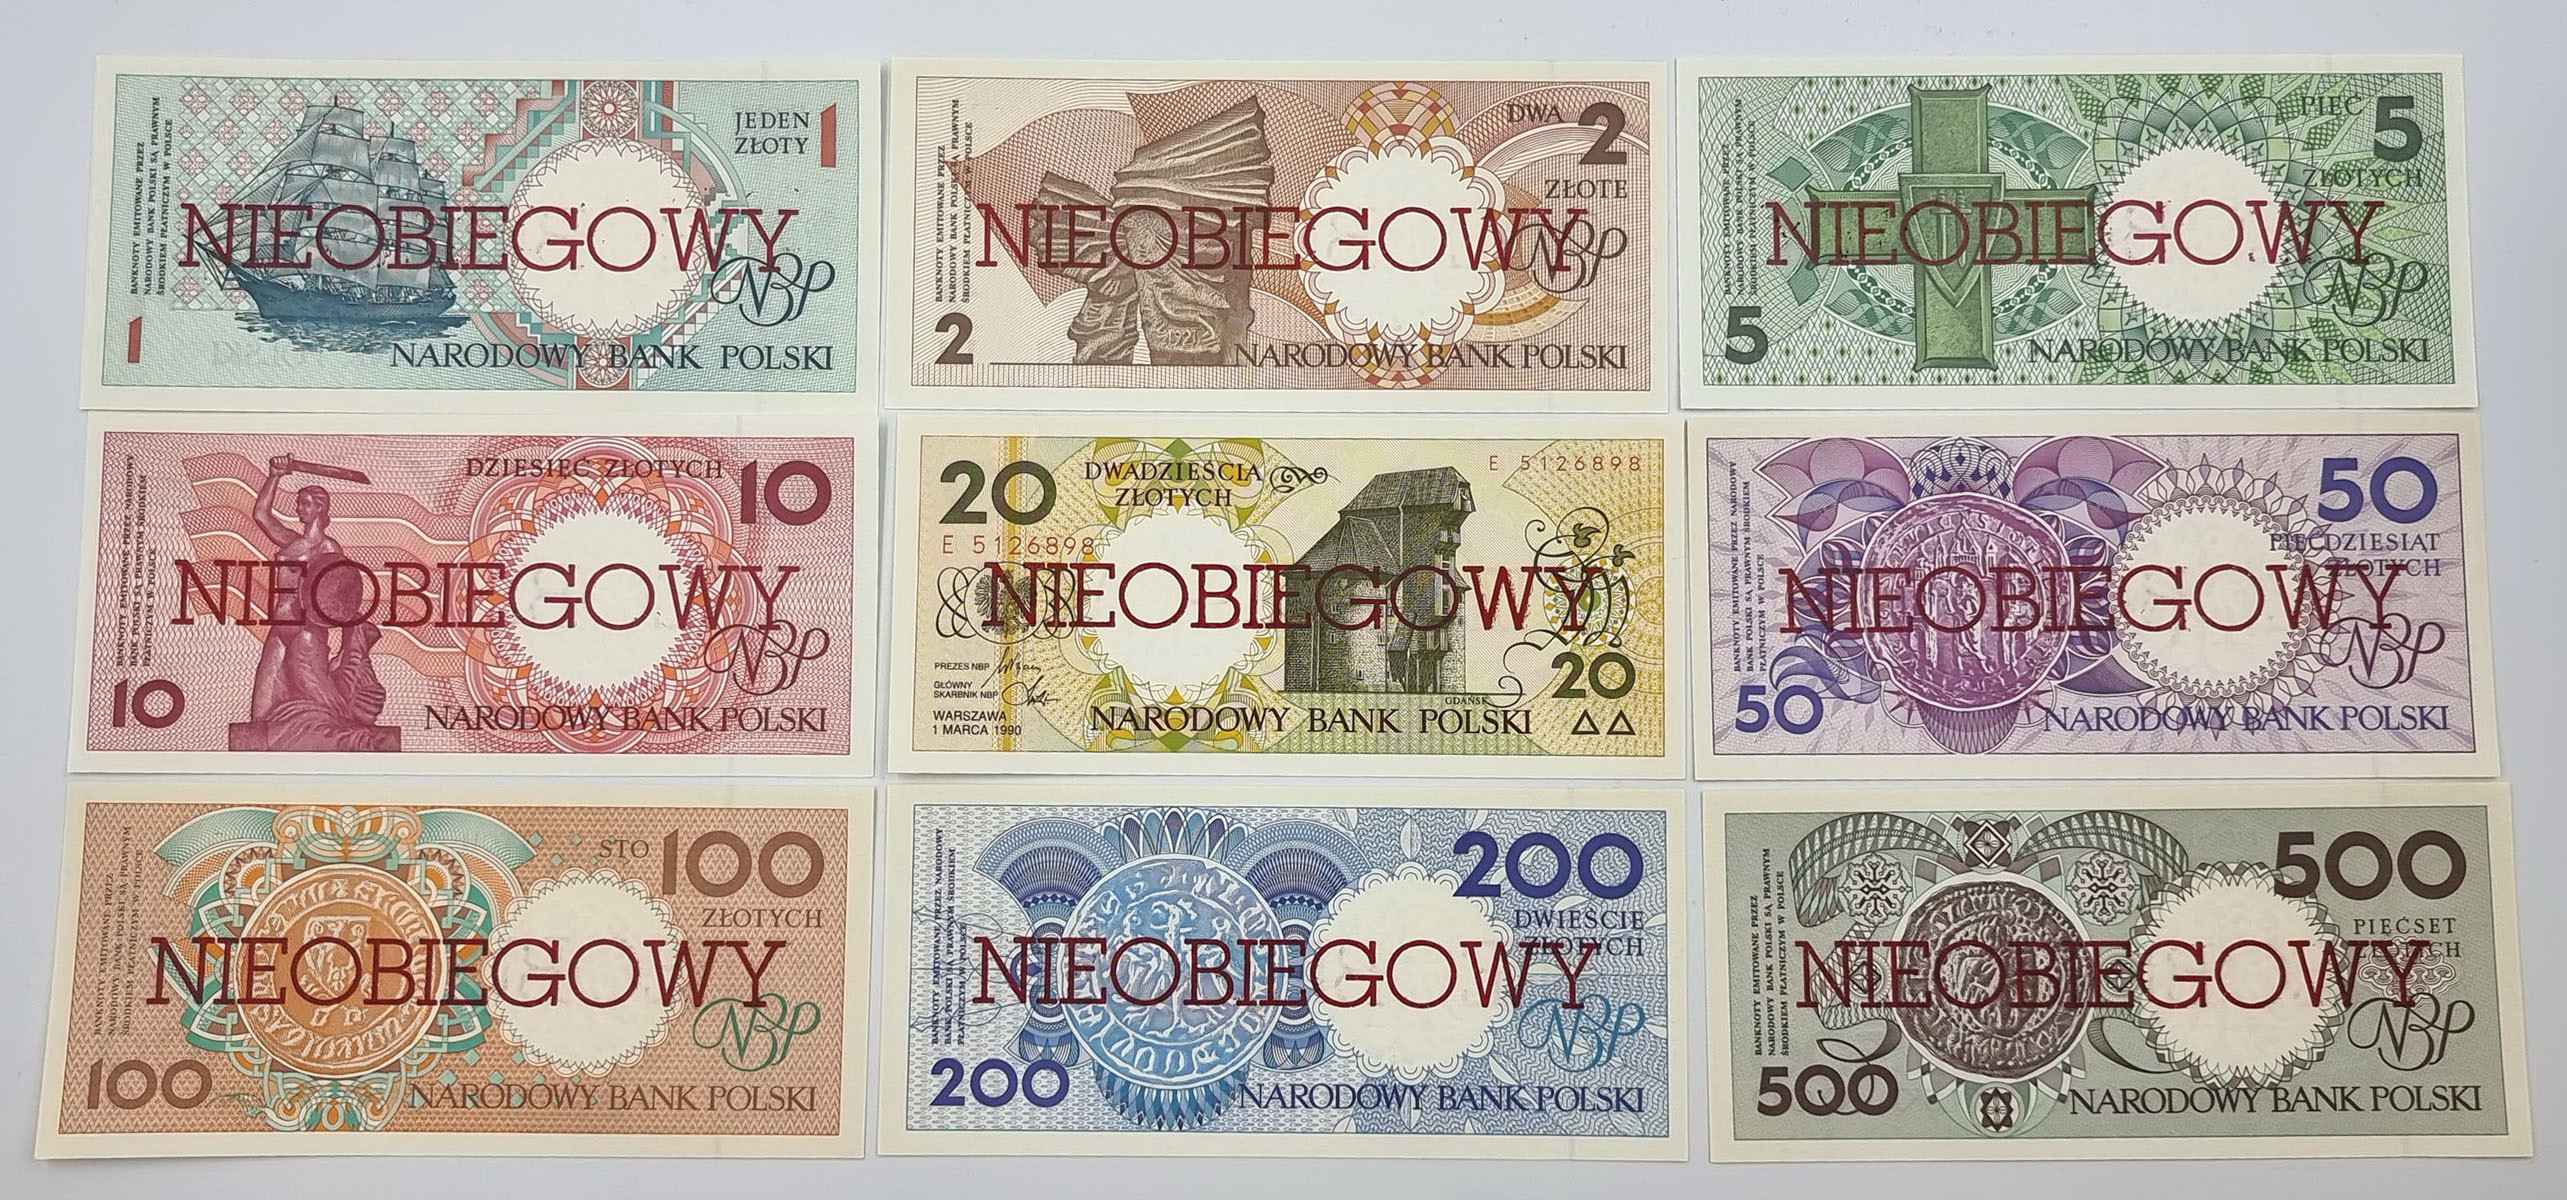 Miasta Polskie 1990 komplet banknotów 1-500 złotych NIEOBIEGOWY